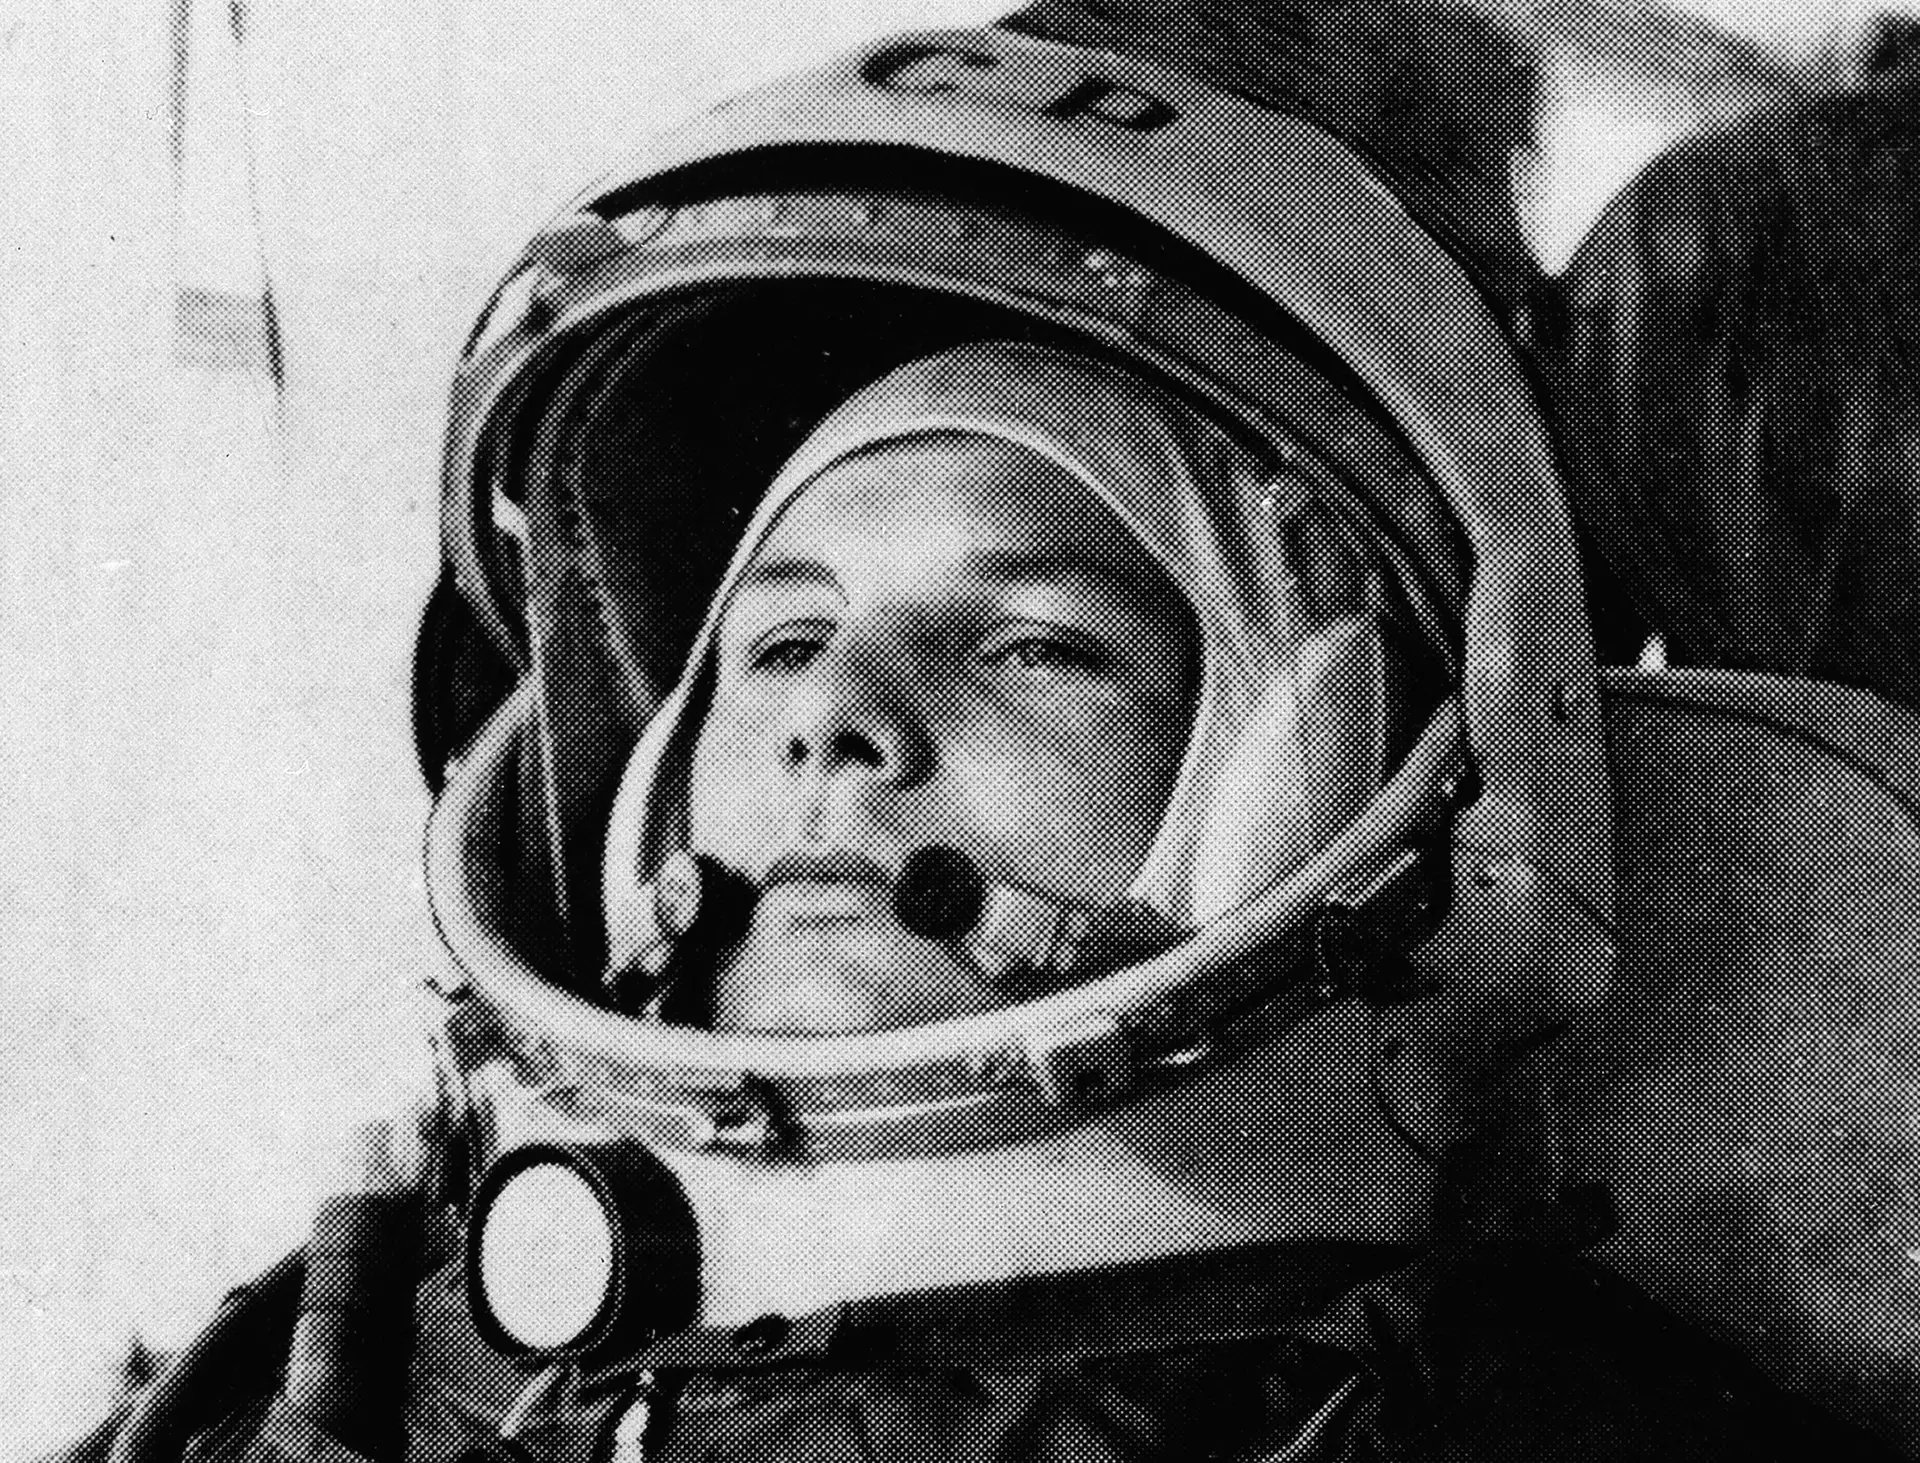 O russo Yuri Gagarin nasceu em 1934 (morreu em 1968), e ficou para a história como o primeiro homem a viajar para o espaço. A 12 de Abril de 1961, aos 27 anos, fez o primeiro voo bem sucedido de uma órbita à Terra.